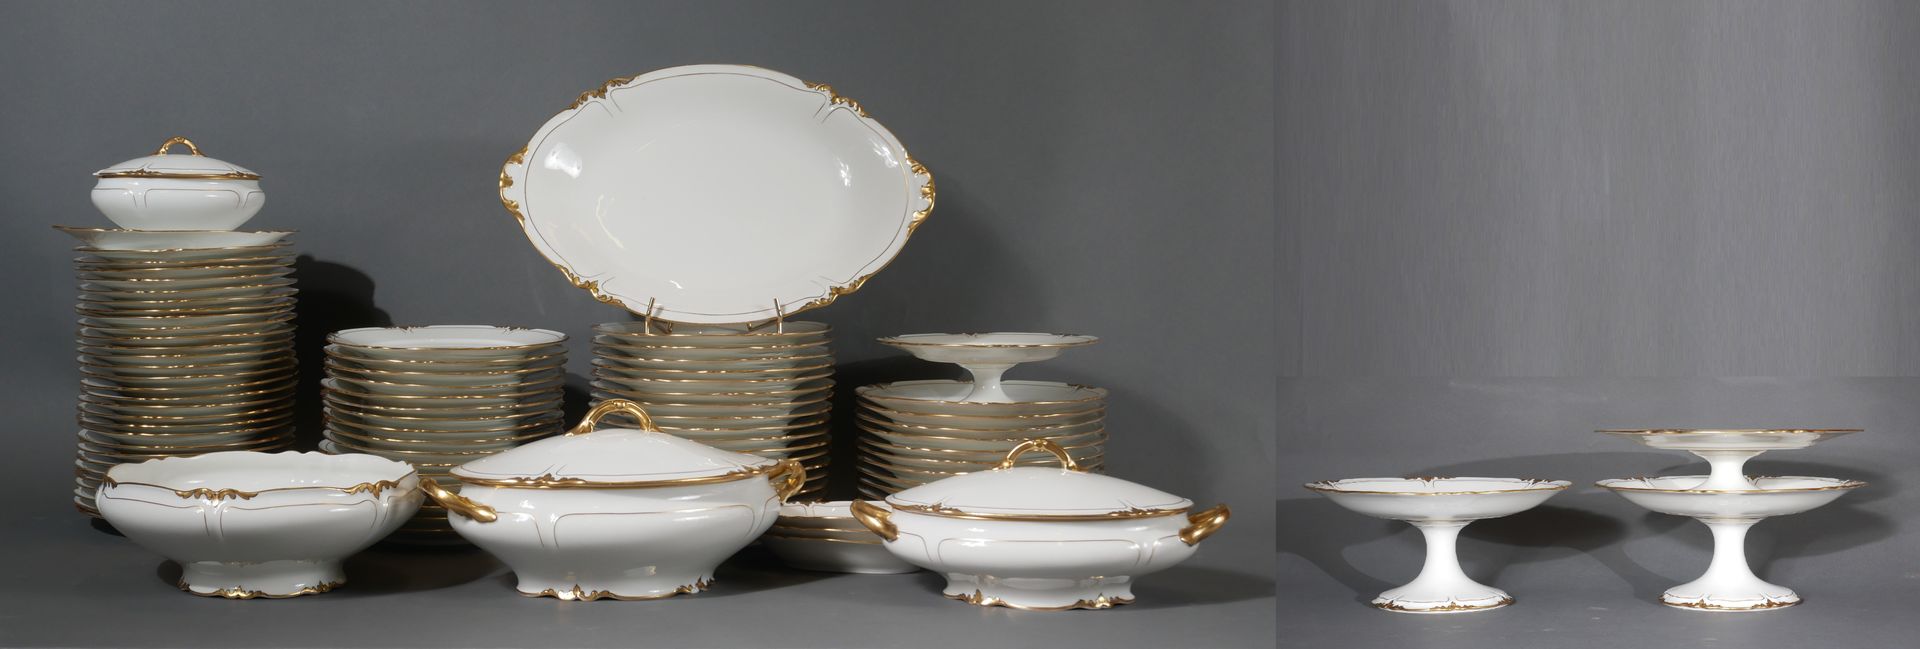 Null 利莫盖斯

白瓷晚餐服务的一部分，带有镀金的罗卡莱斯装饰（2个盘子破裂，事故和修复的瓦罐盖子）。